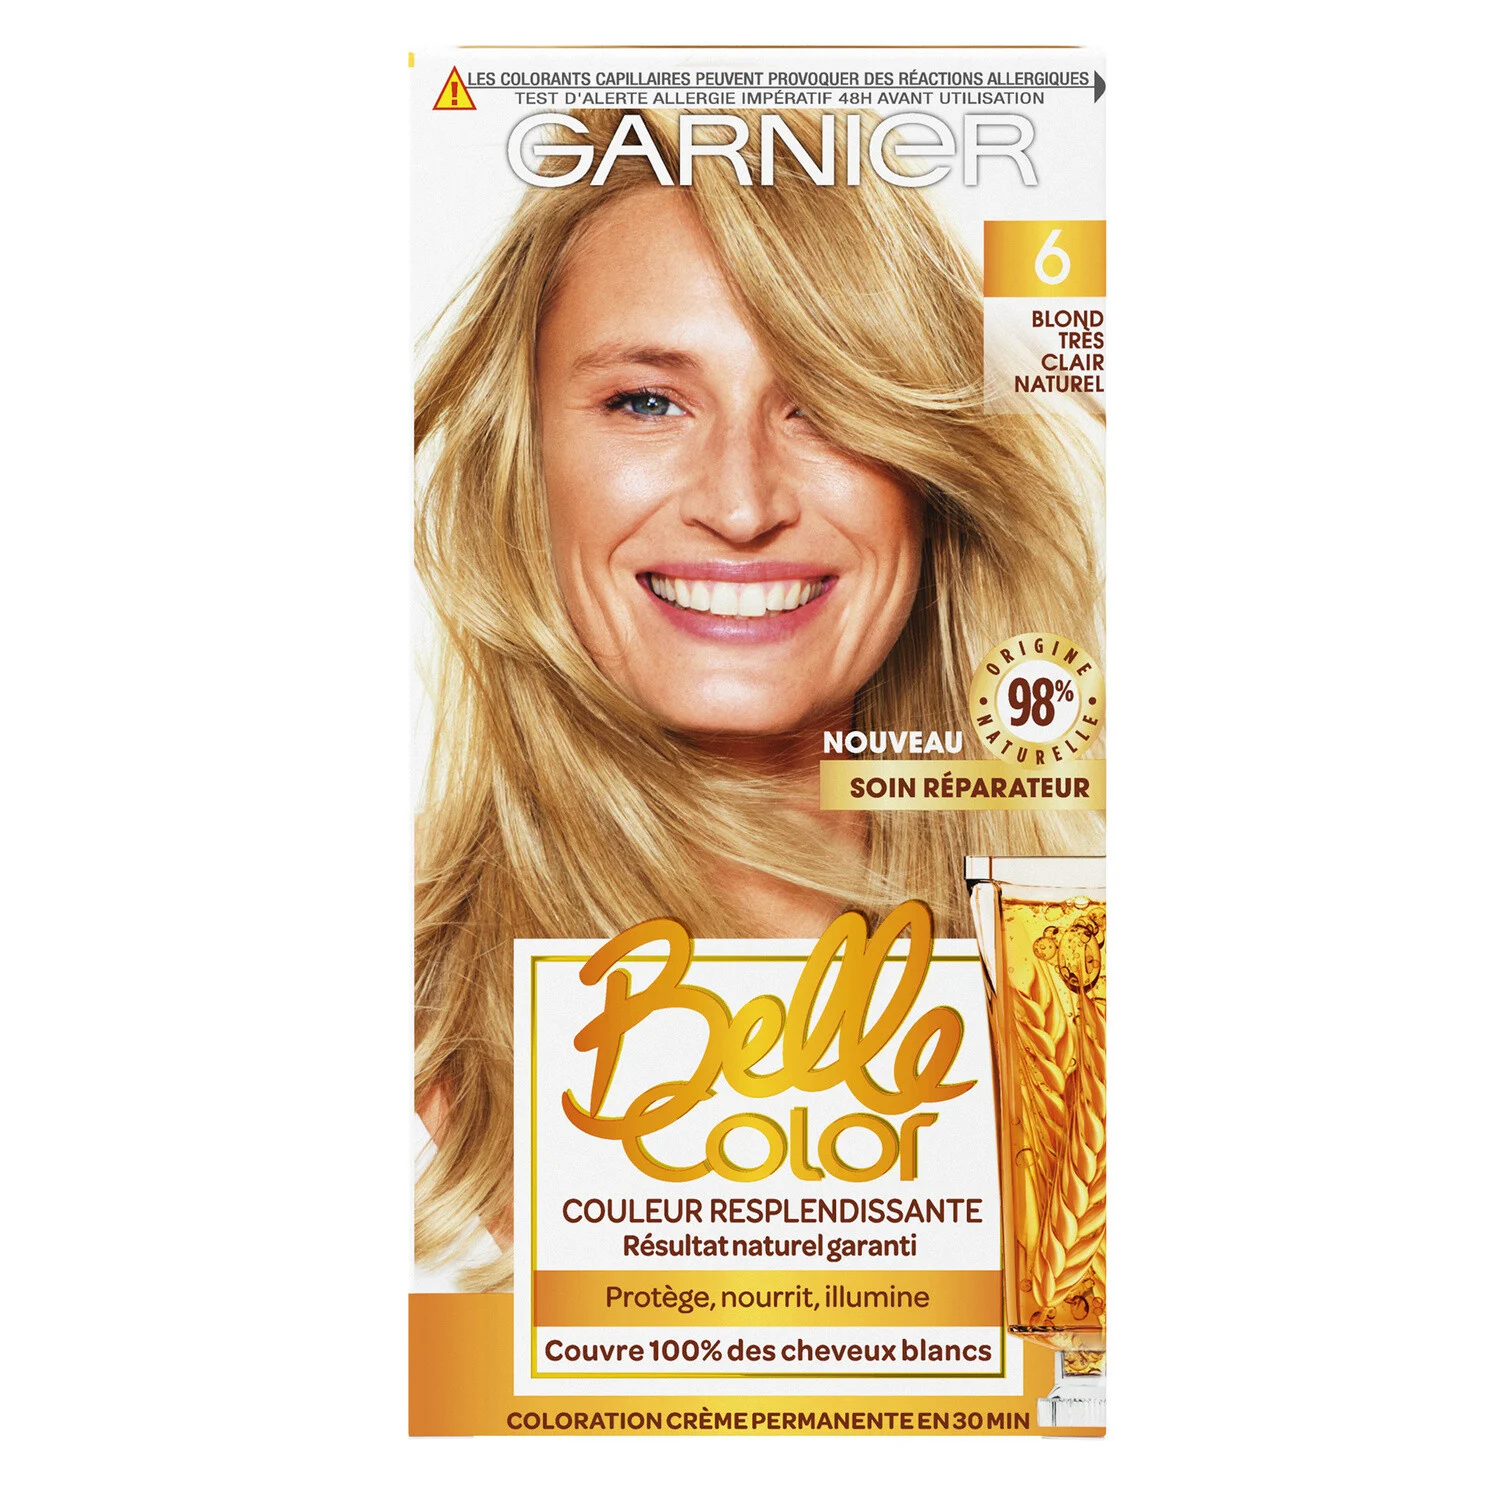 Coloration Cheveux Permanente 6 Blond Très Clair Naturel Belle Color - Garnier